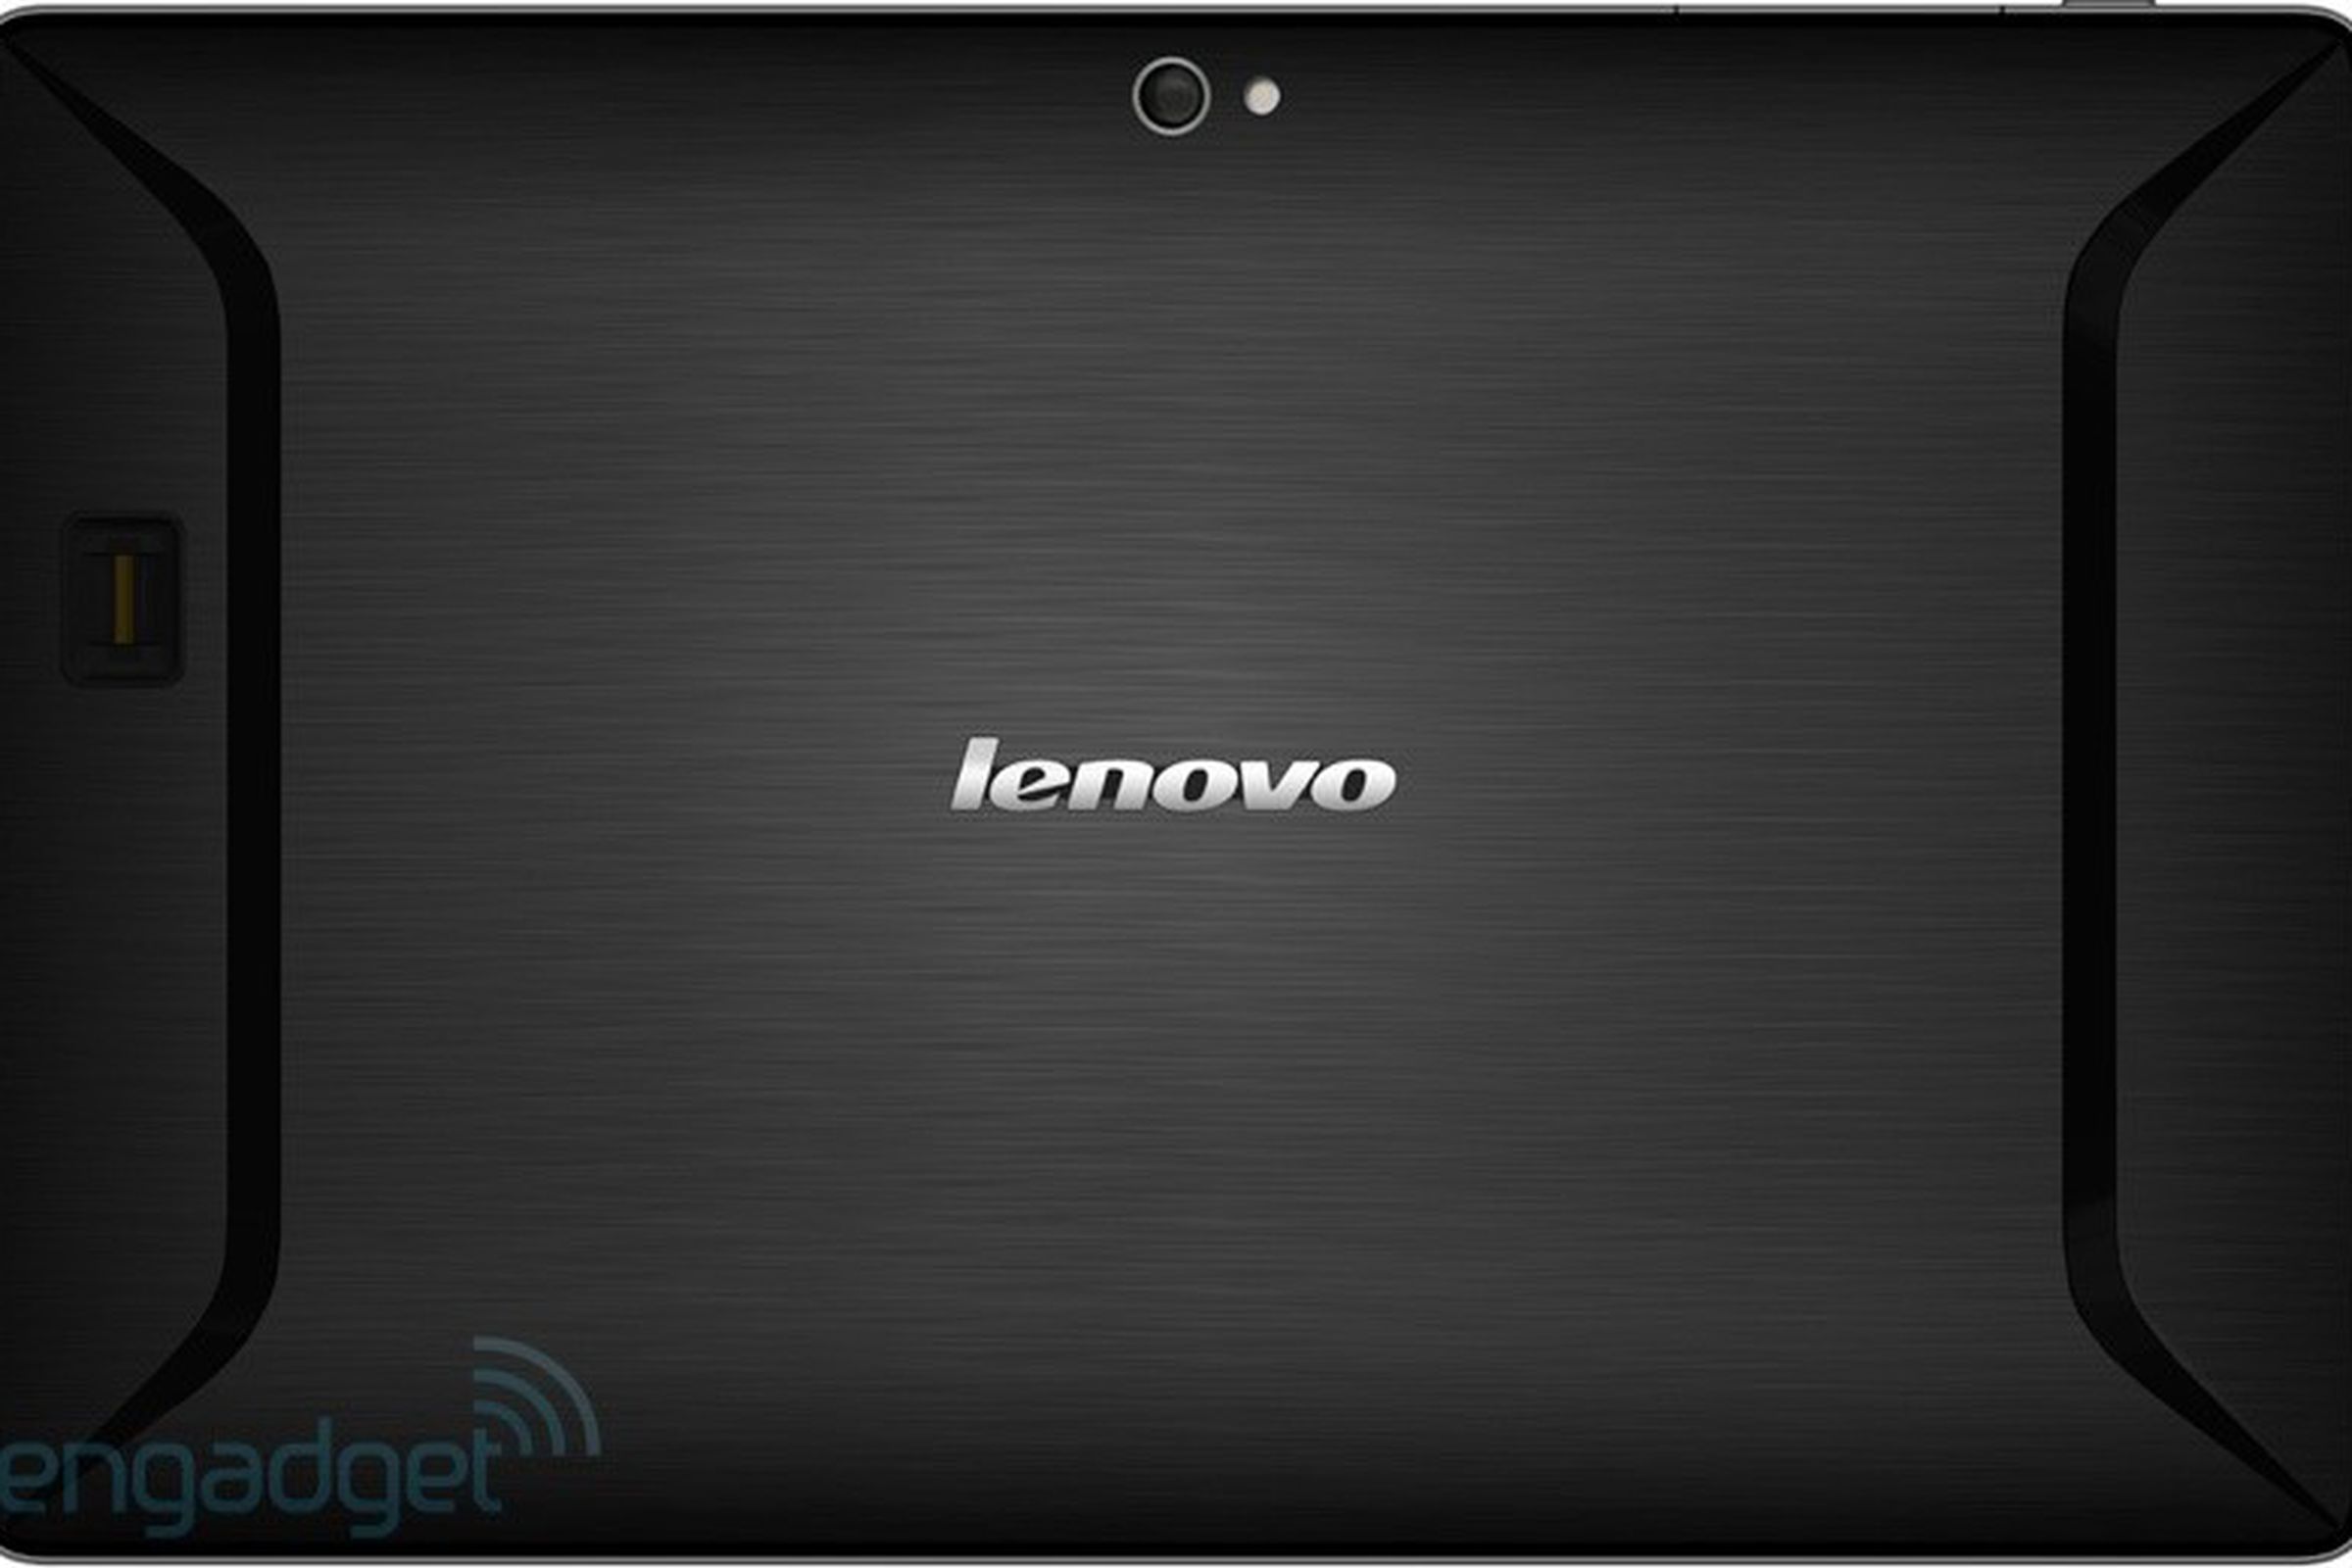 Lenovo Tegra 3 leak